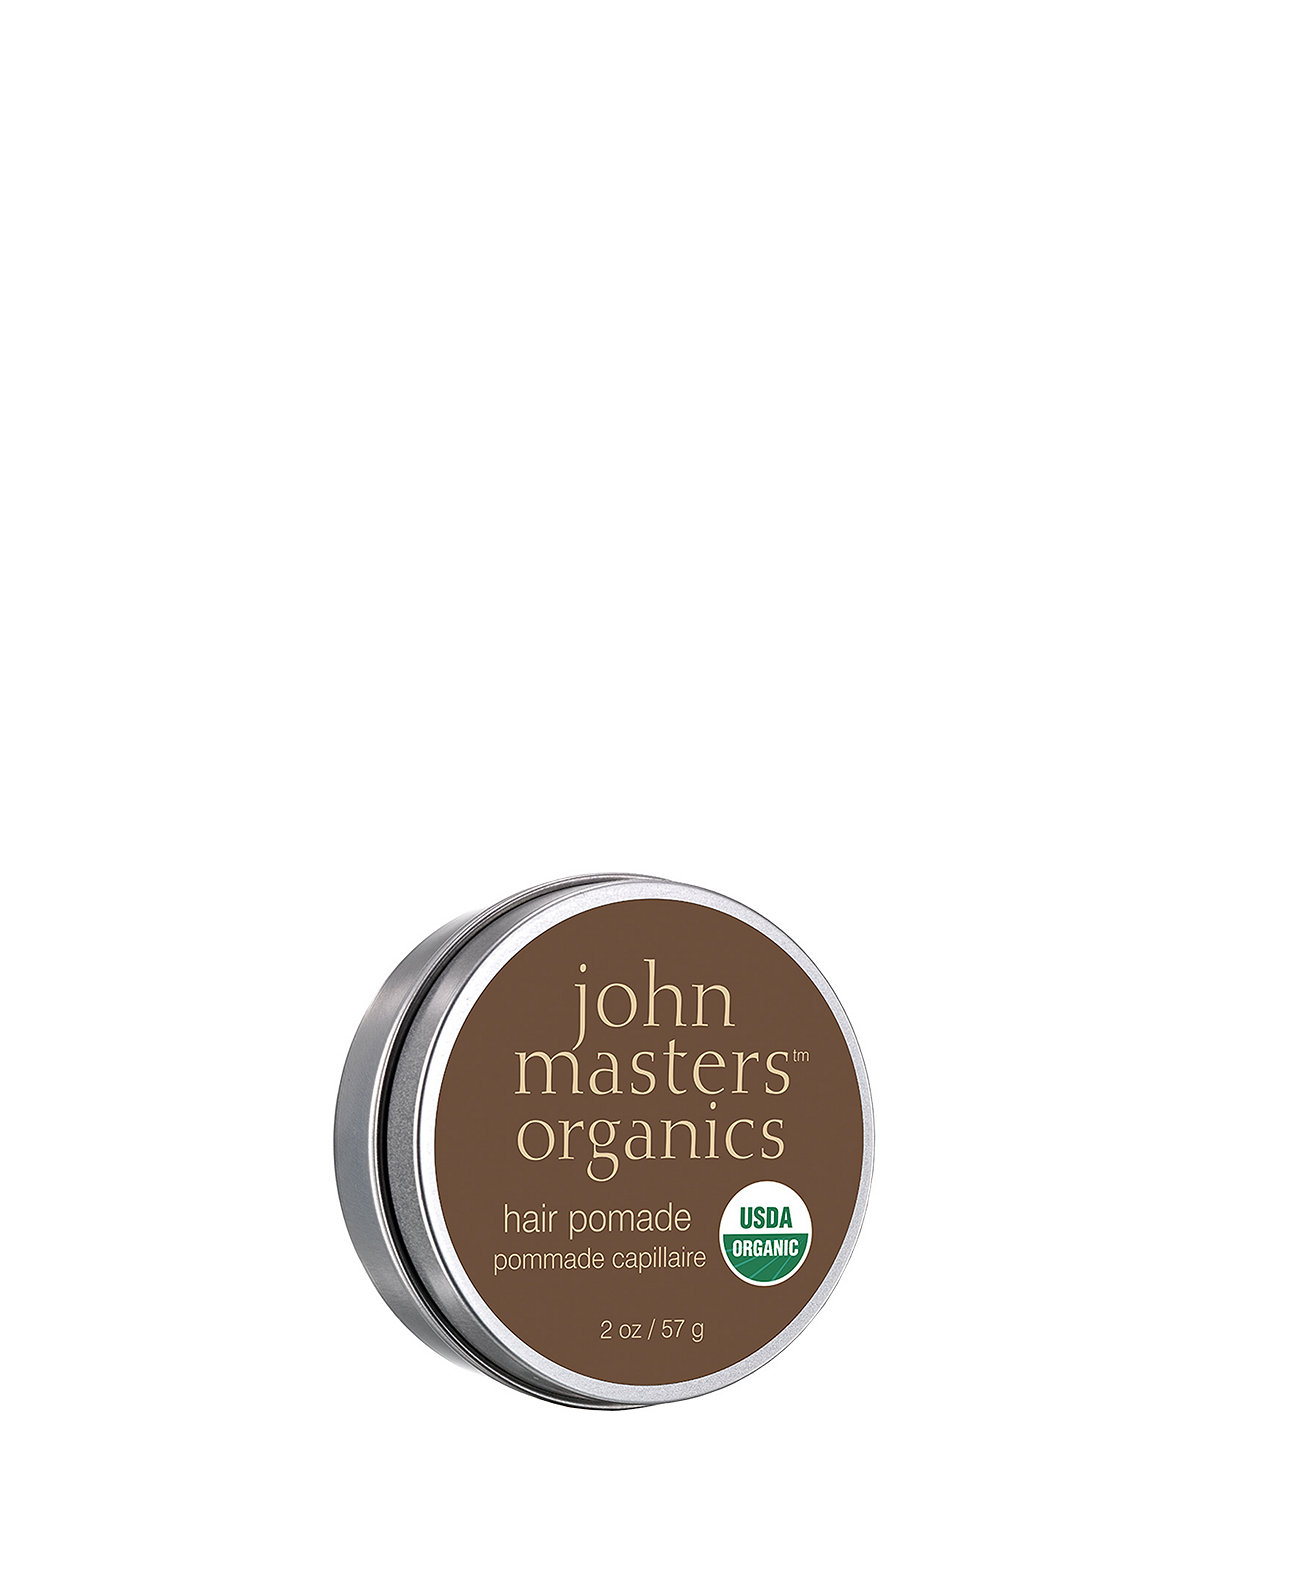 Помада для волос, 2 унции. John Masters Organics